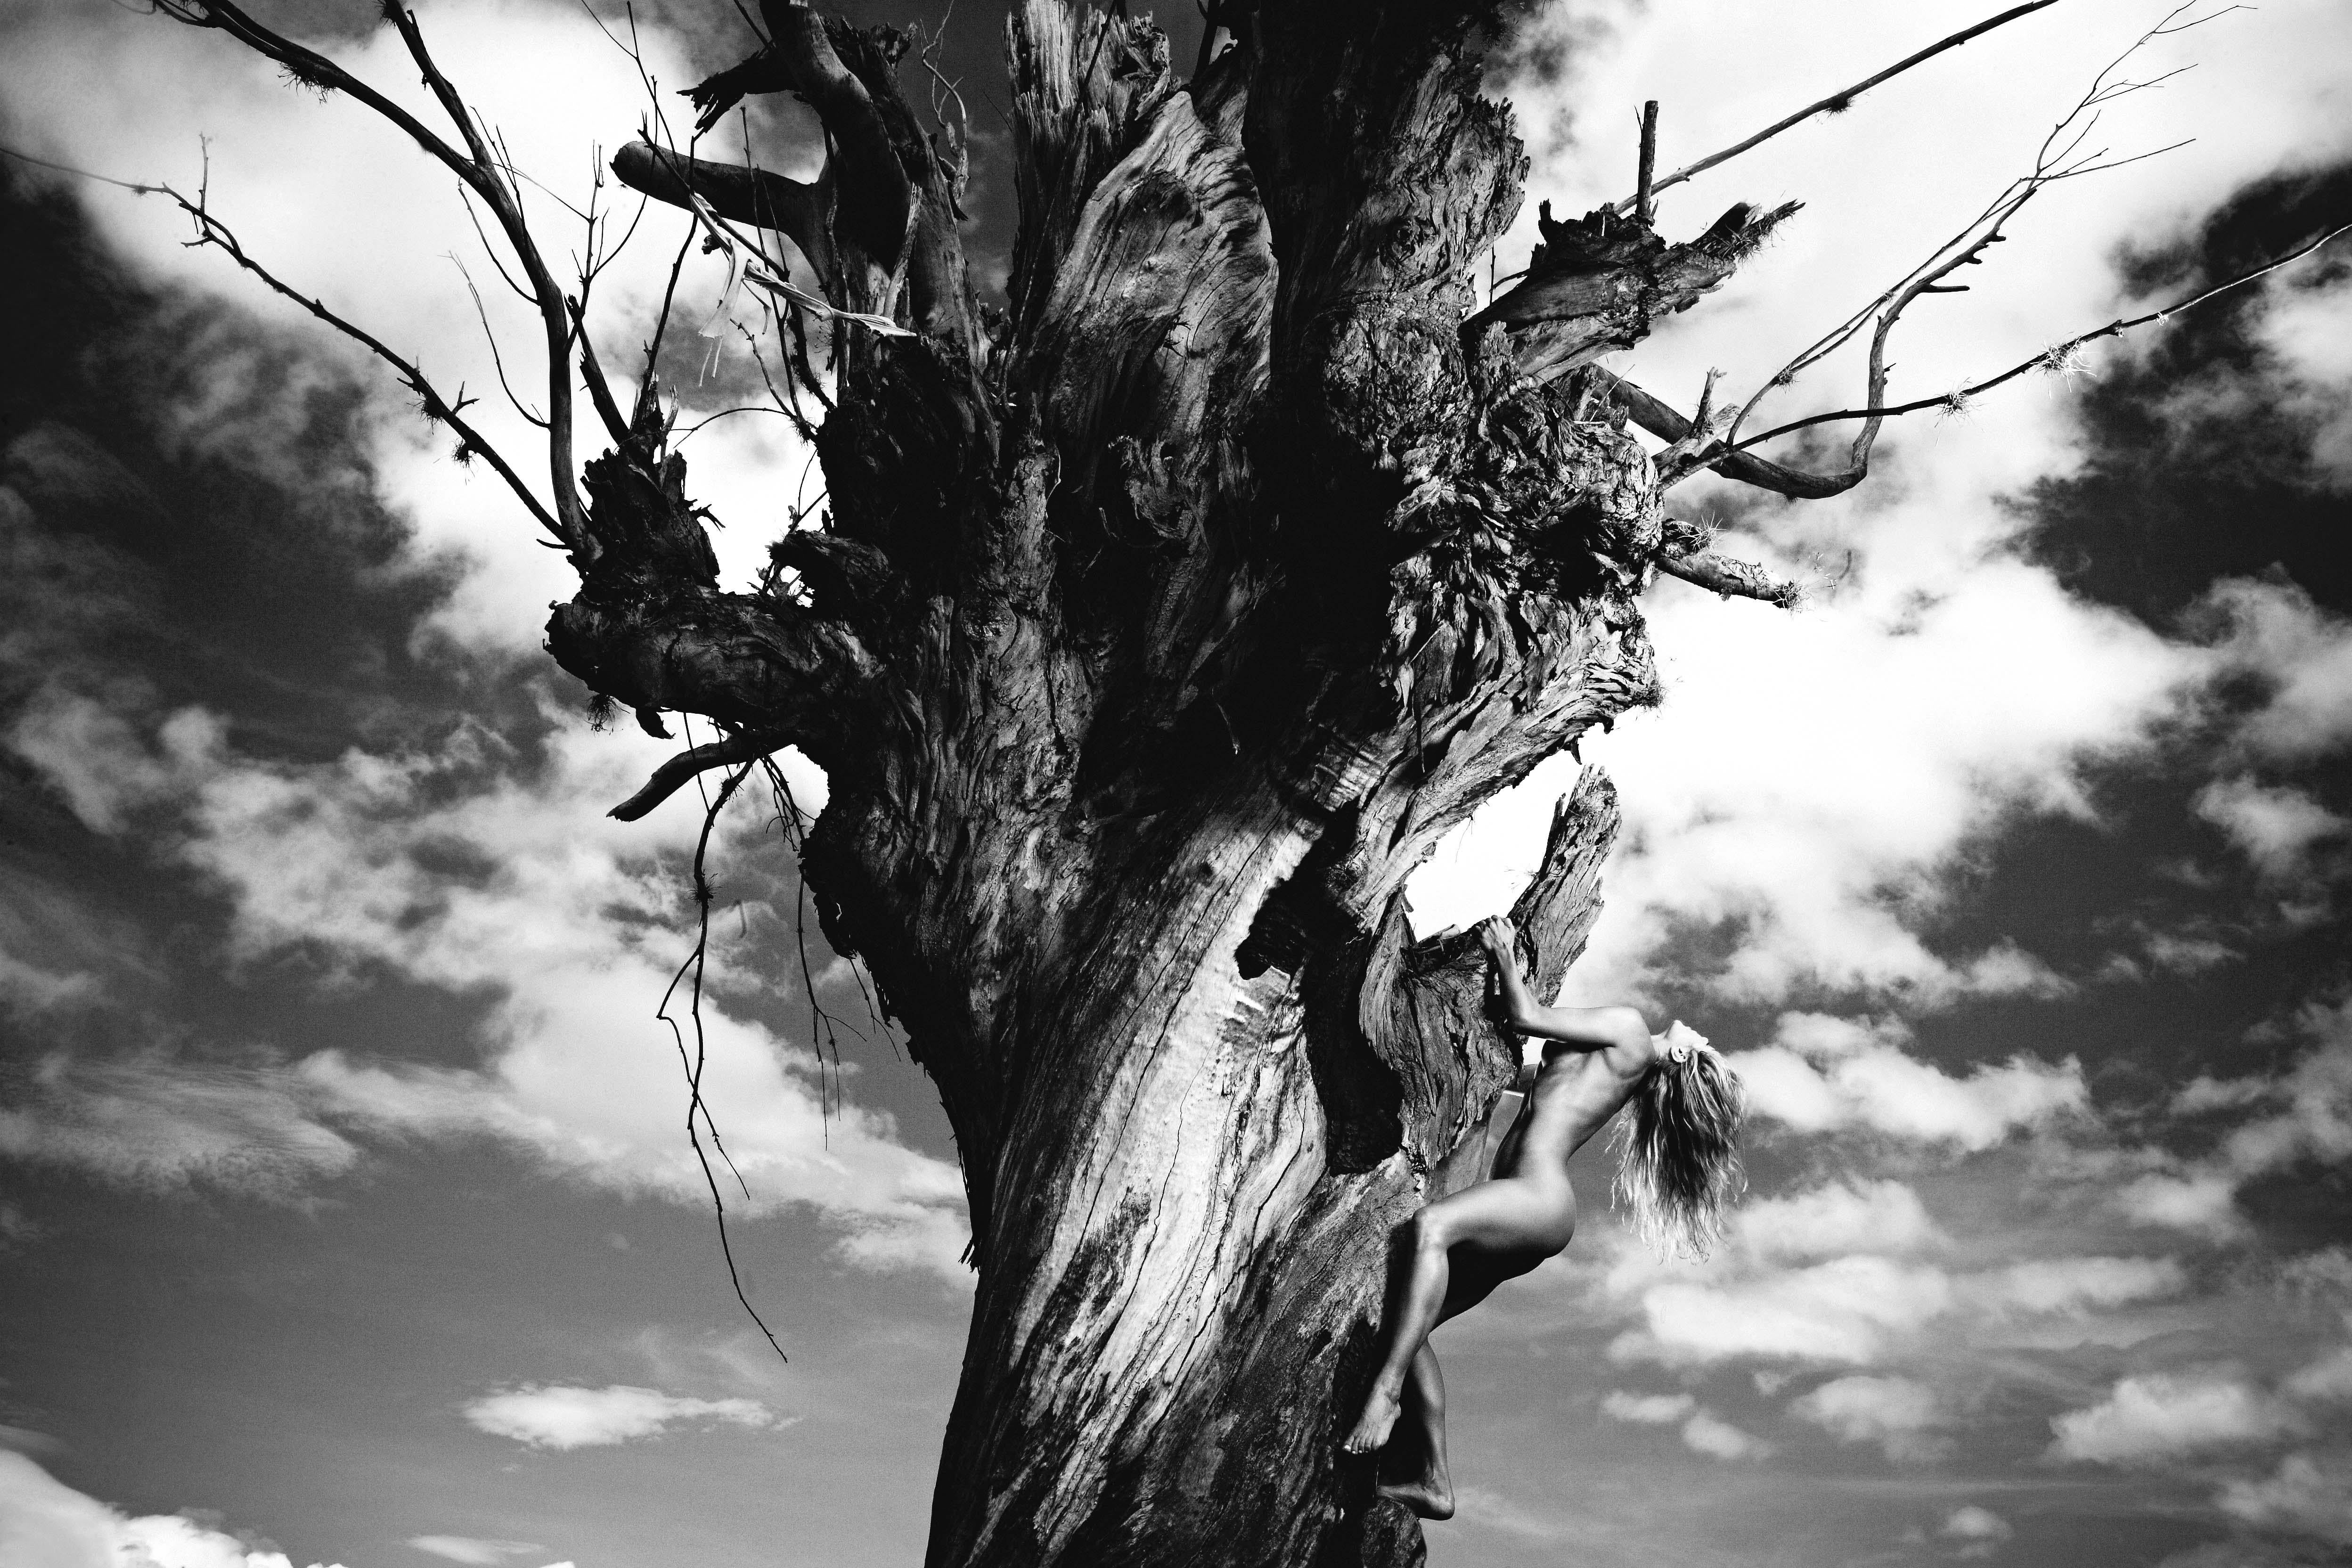 Half Angels, Halb-Demons #12, Akt auf einem Baum. Schwarz-Weiß-Fotografie von